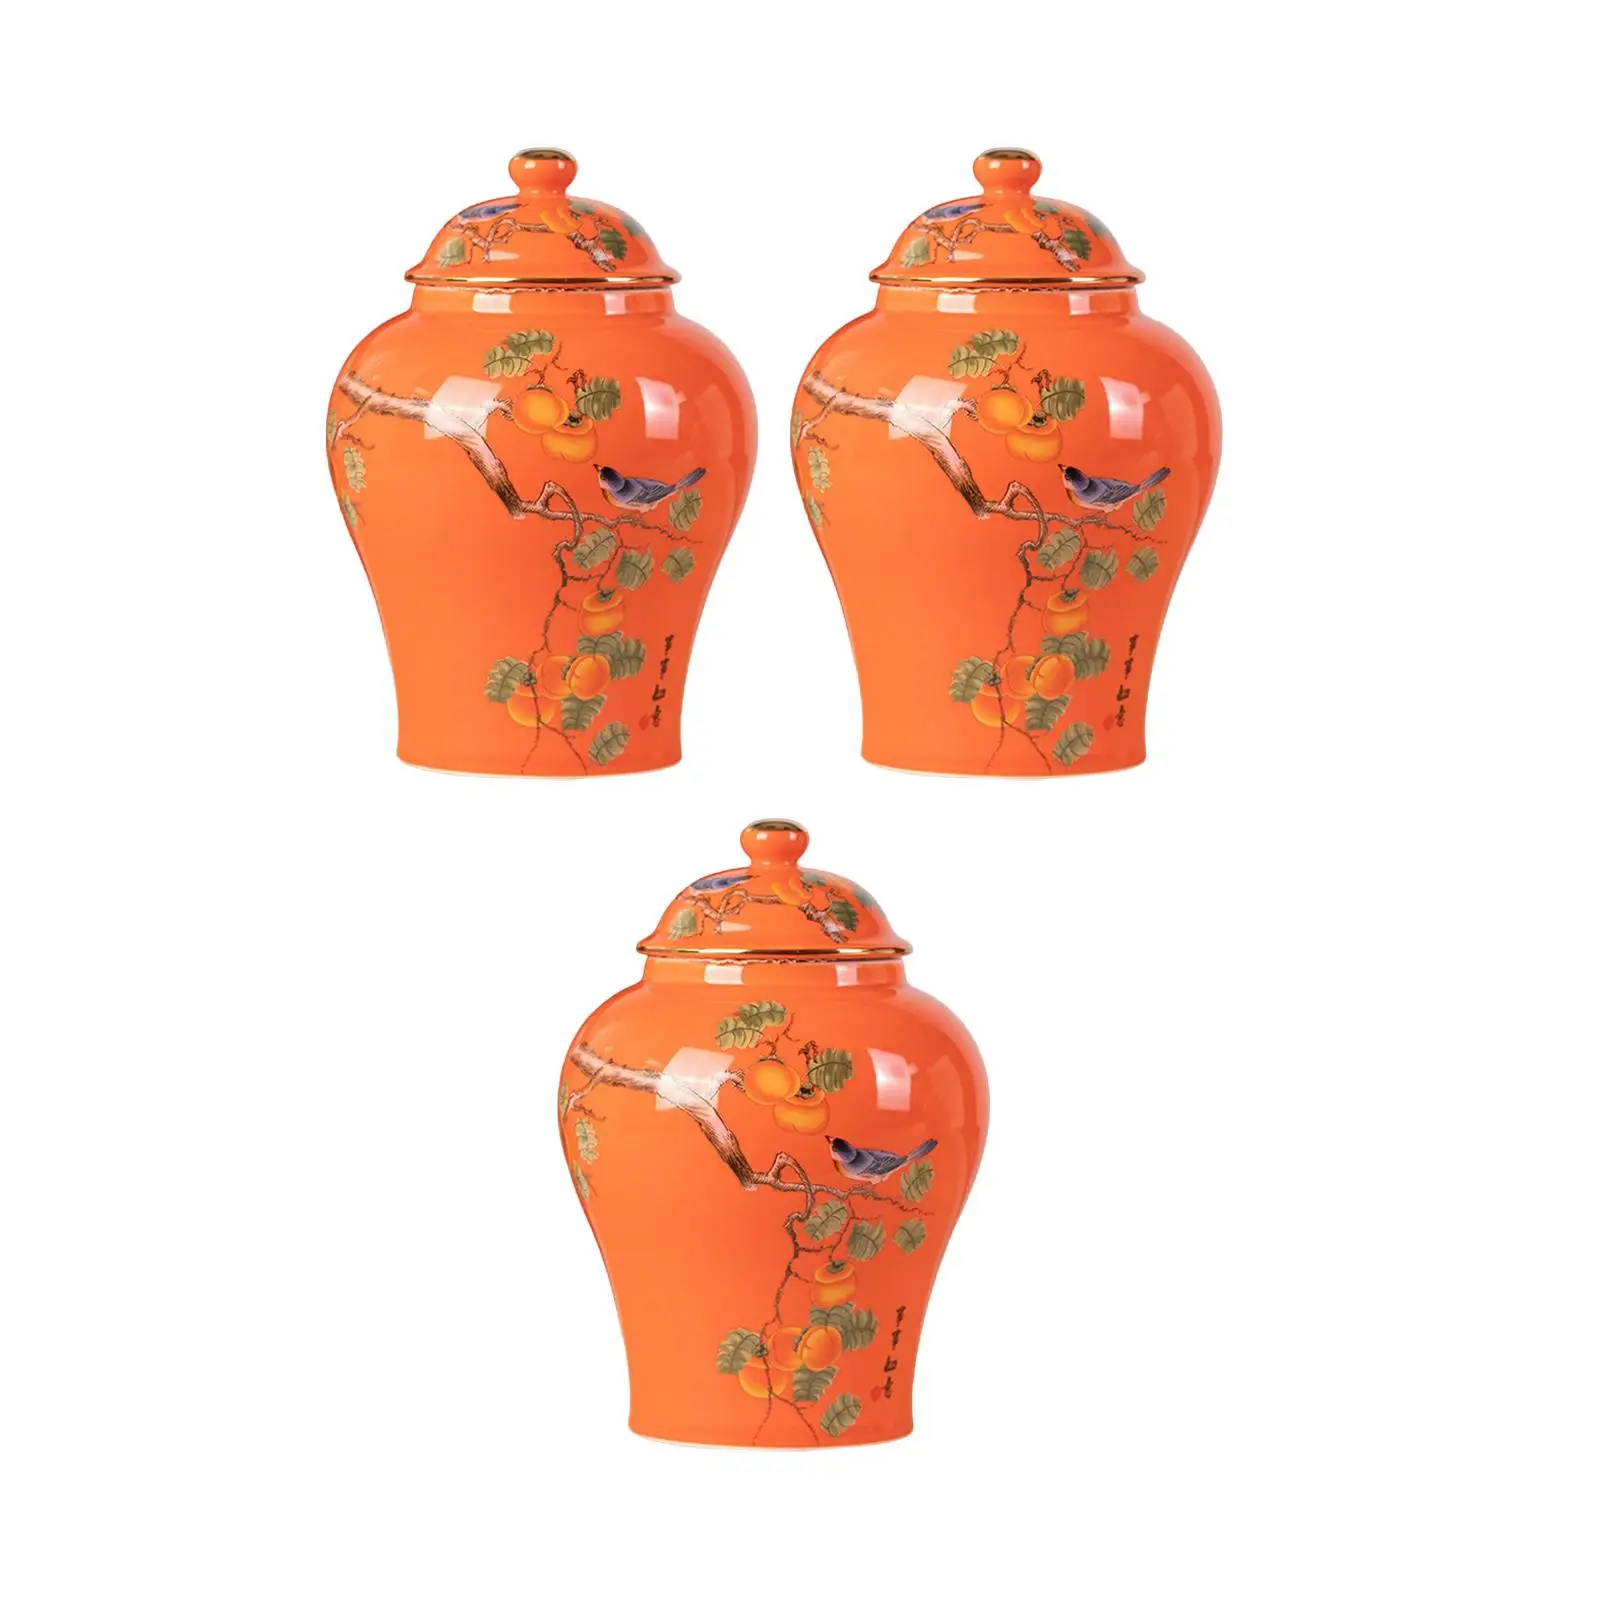 Flower Vase Tea Tin Flowerpot Ceramic Ginger Jars for Kitchen Bedroom Office